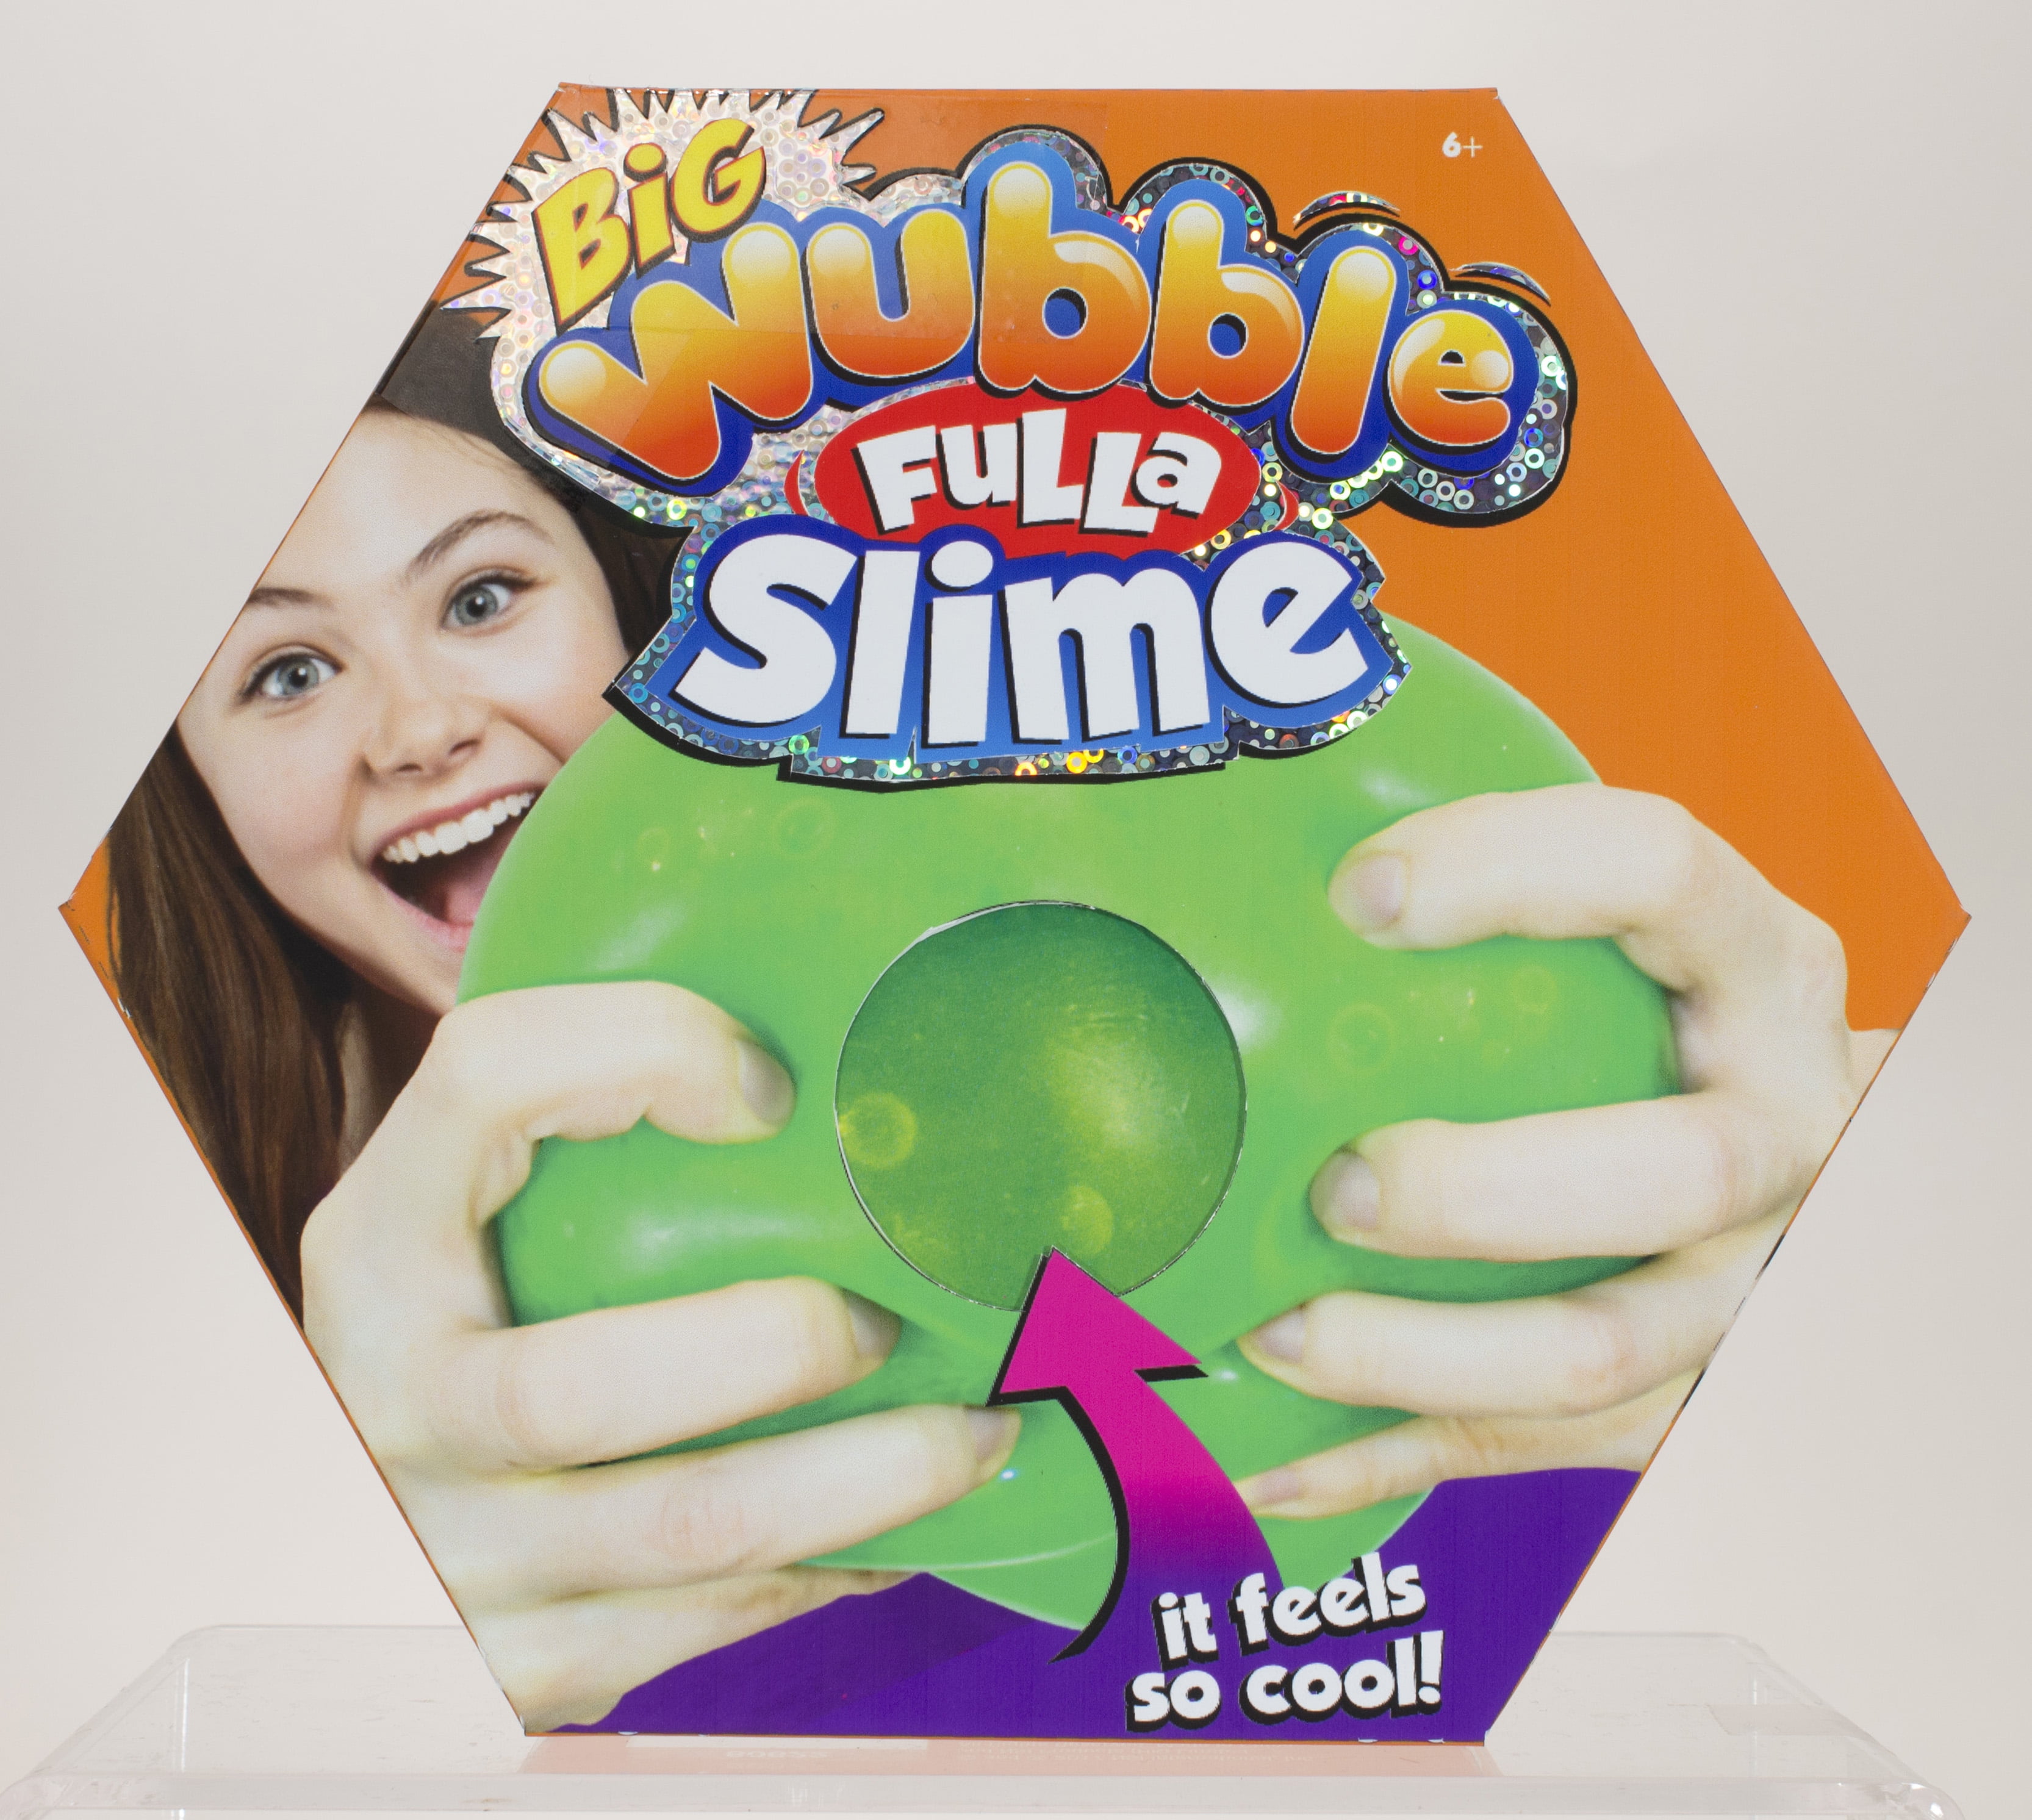 wubble bubble slime ball